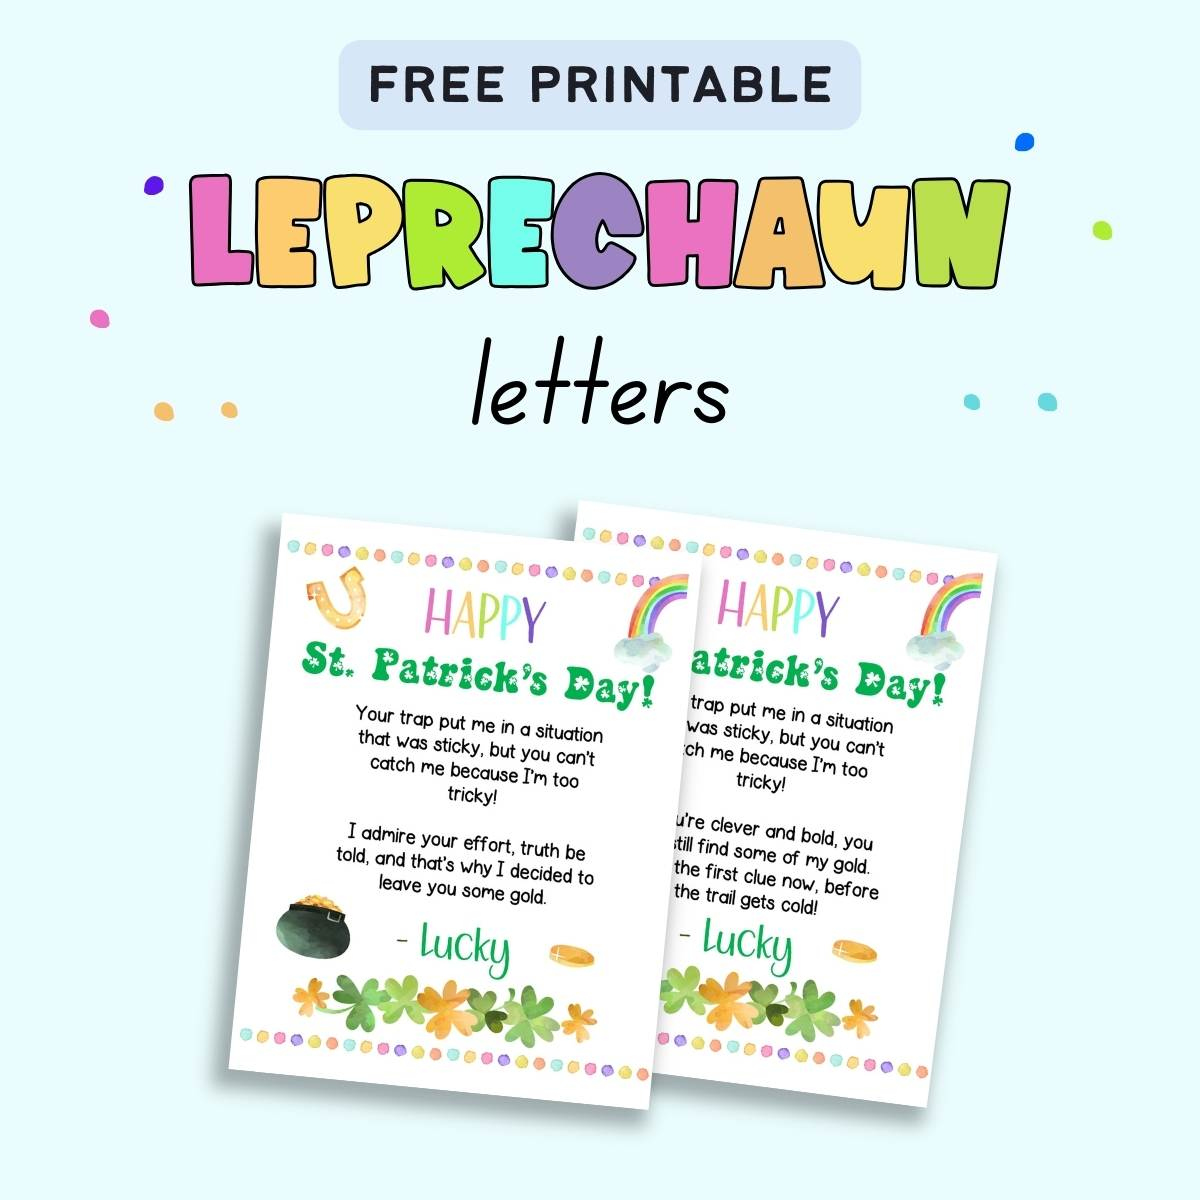 Free Printable Leprechaun Letter - The Artisan Life regarding Free Printable Leprechaun Notes